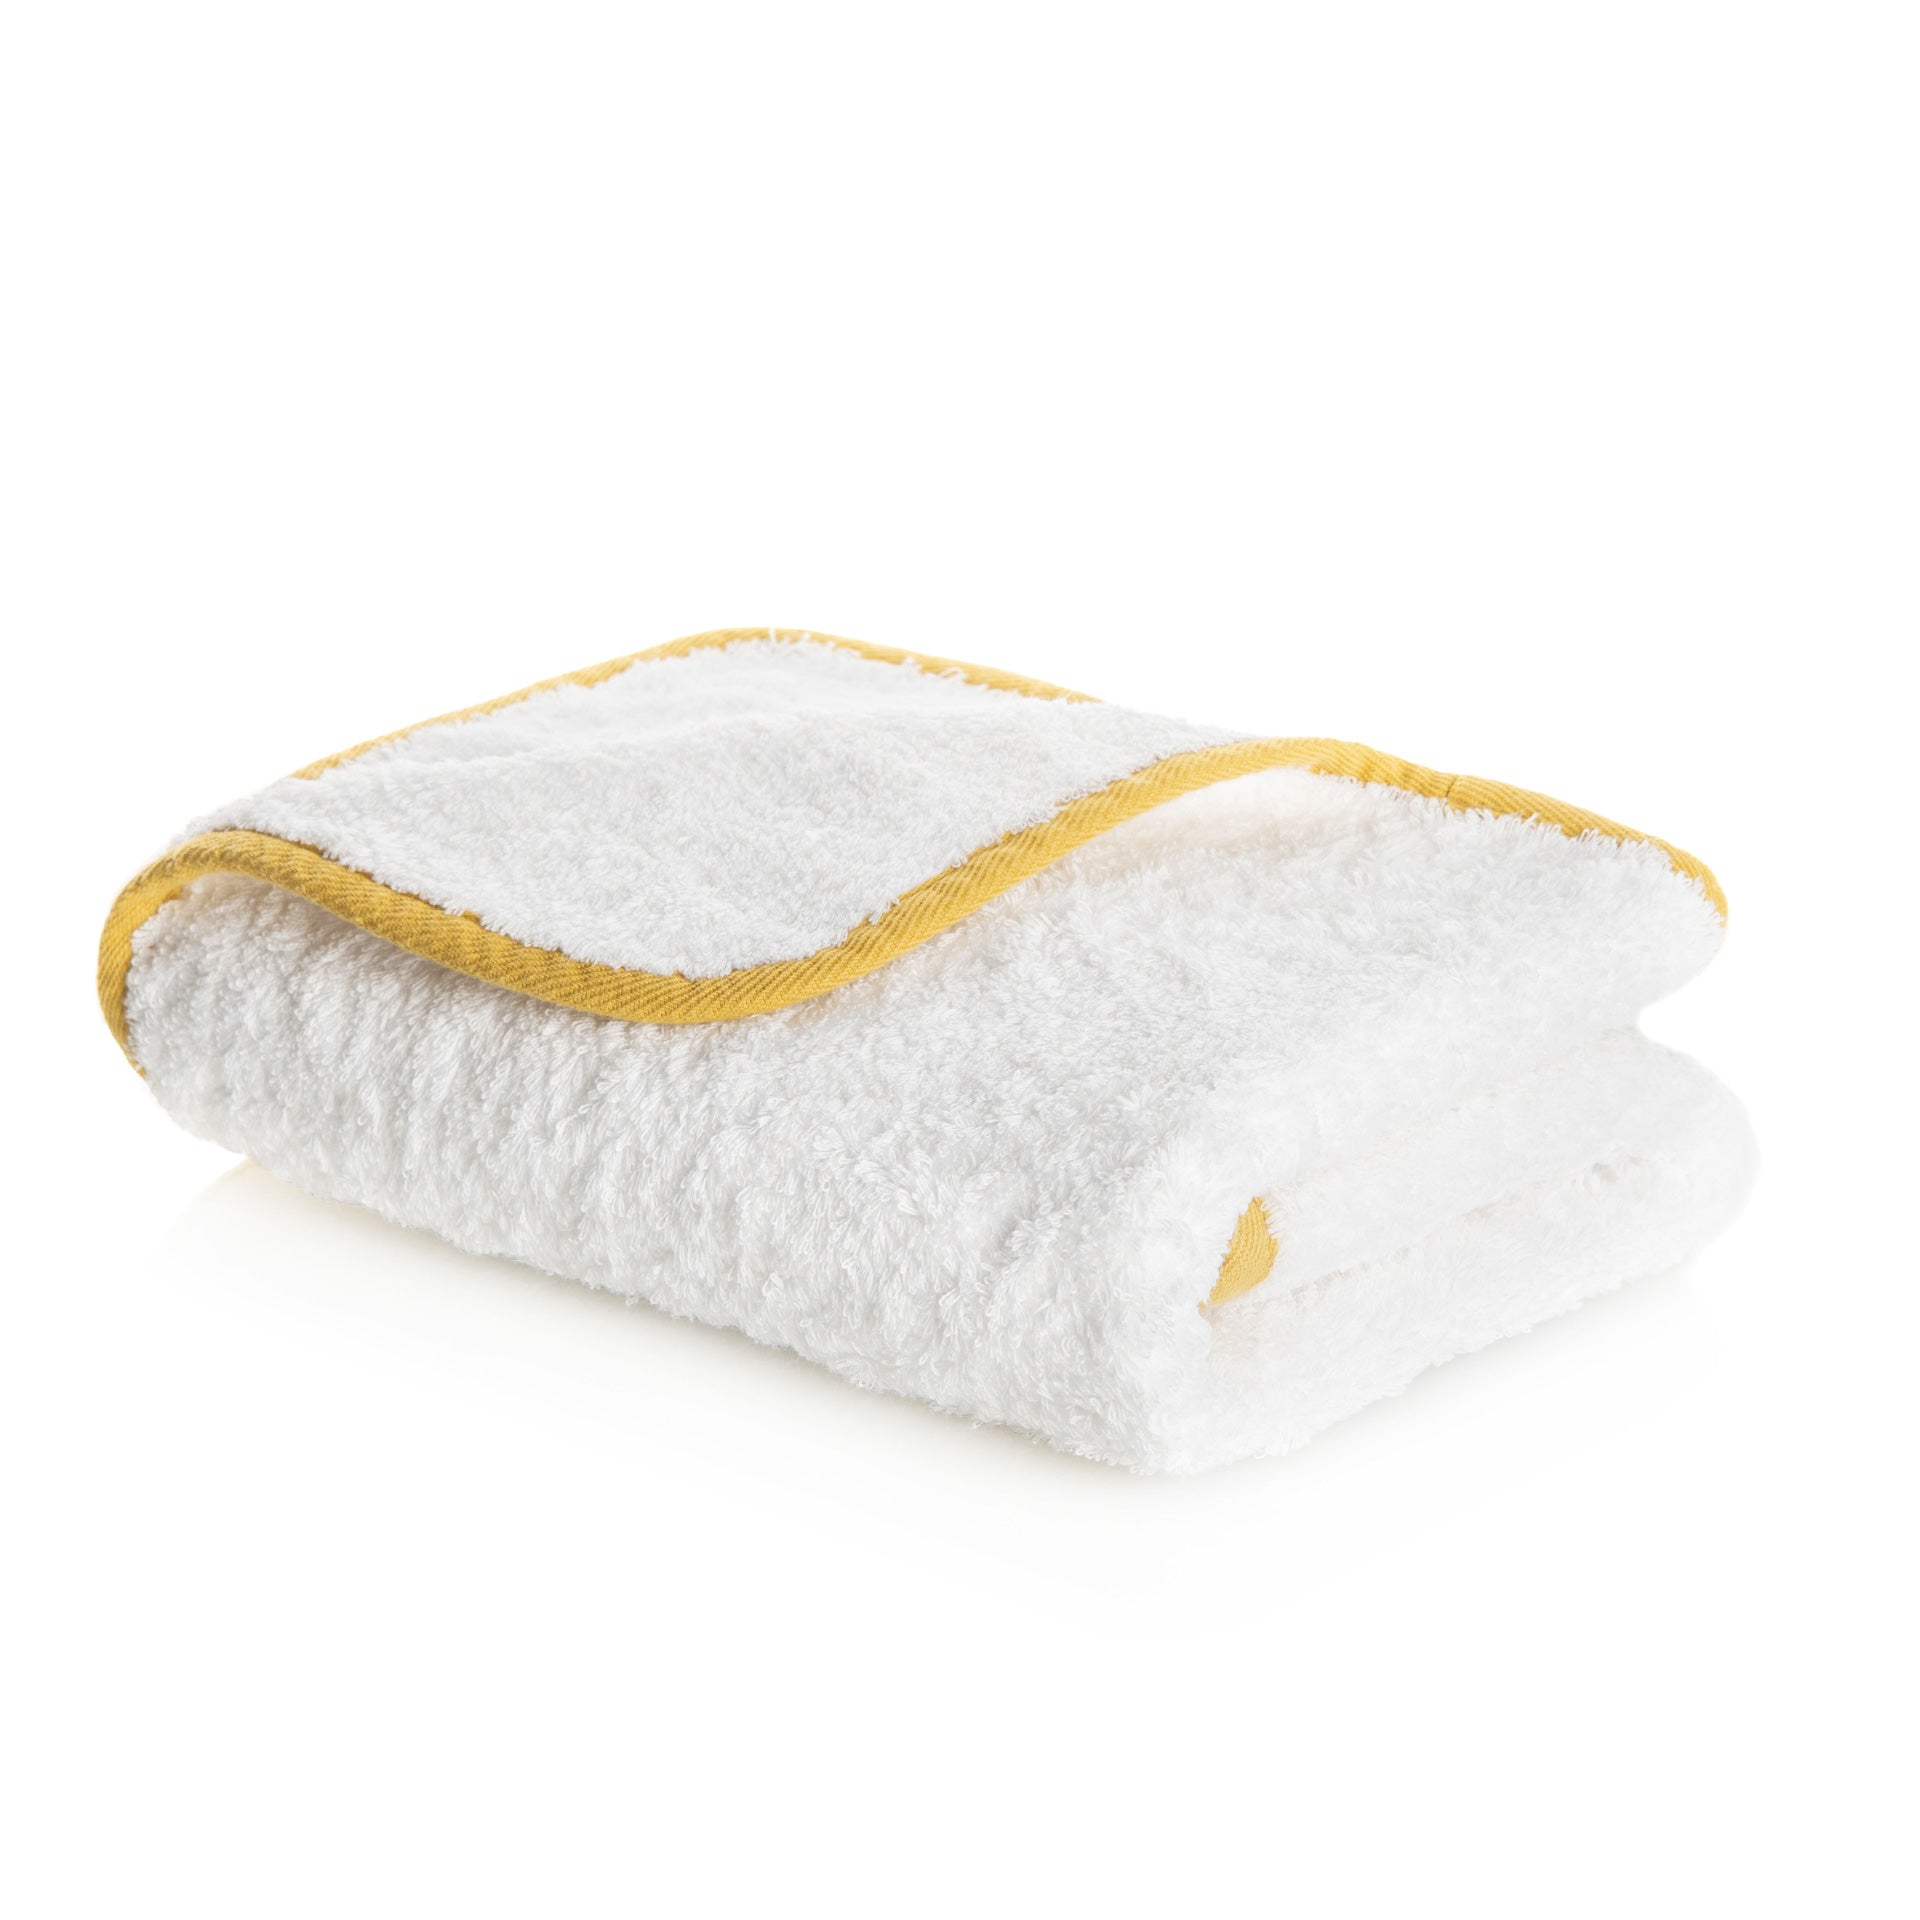 Graccioza Portobello Bath Towel